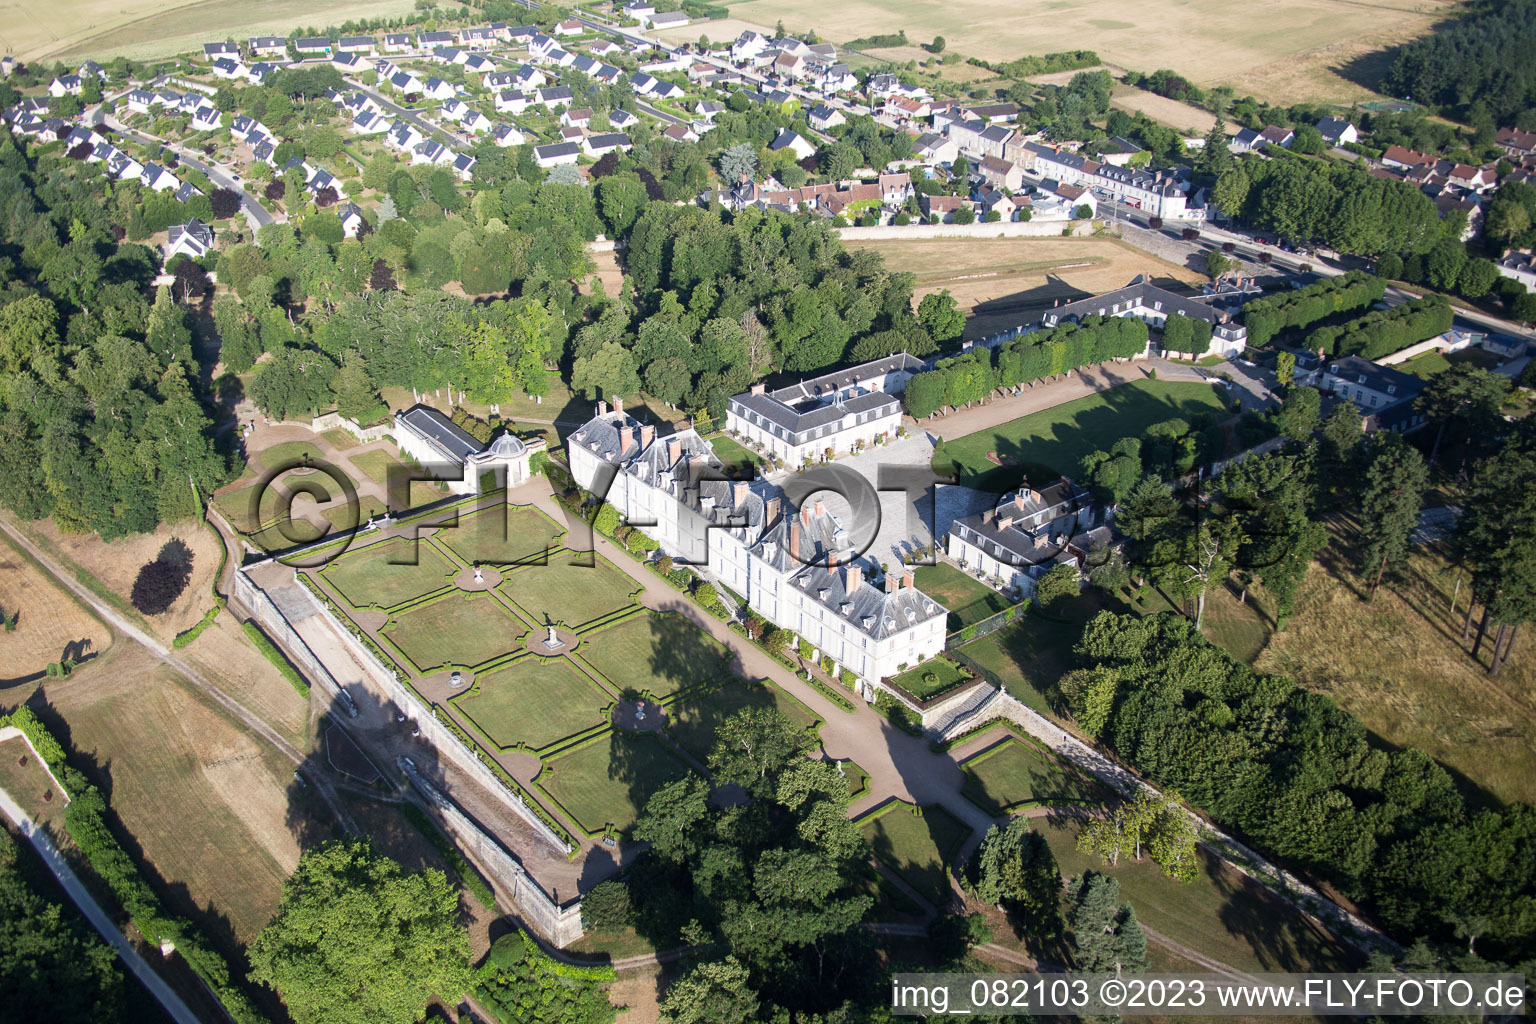 Menars im Bundesland Loir-et-Cher, Frankreich von oben gesehen